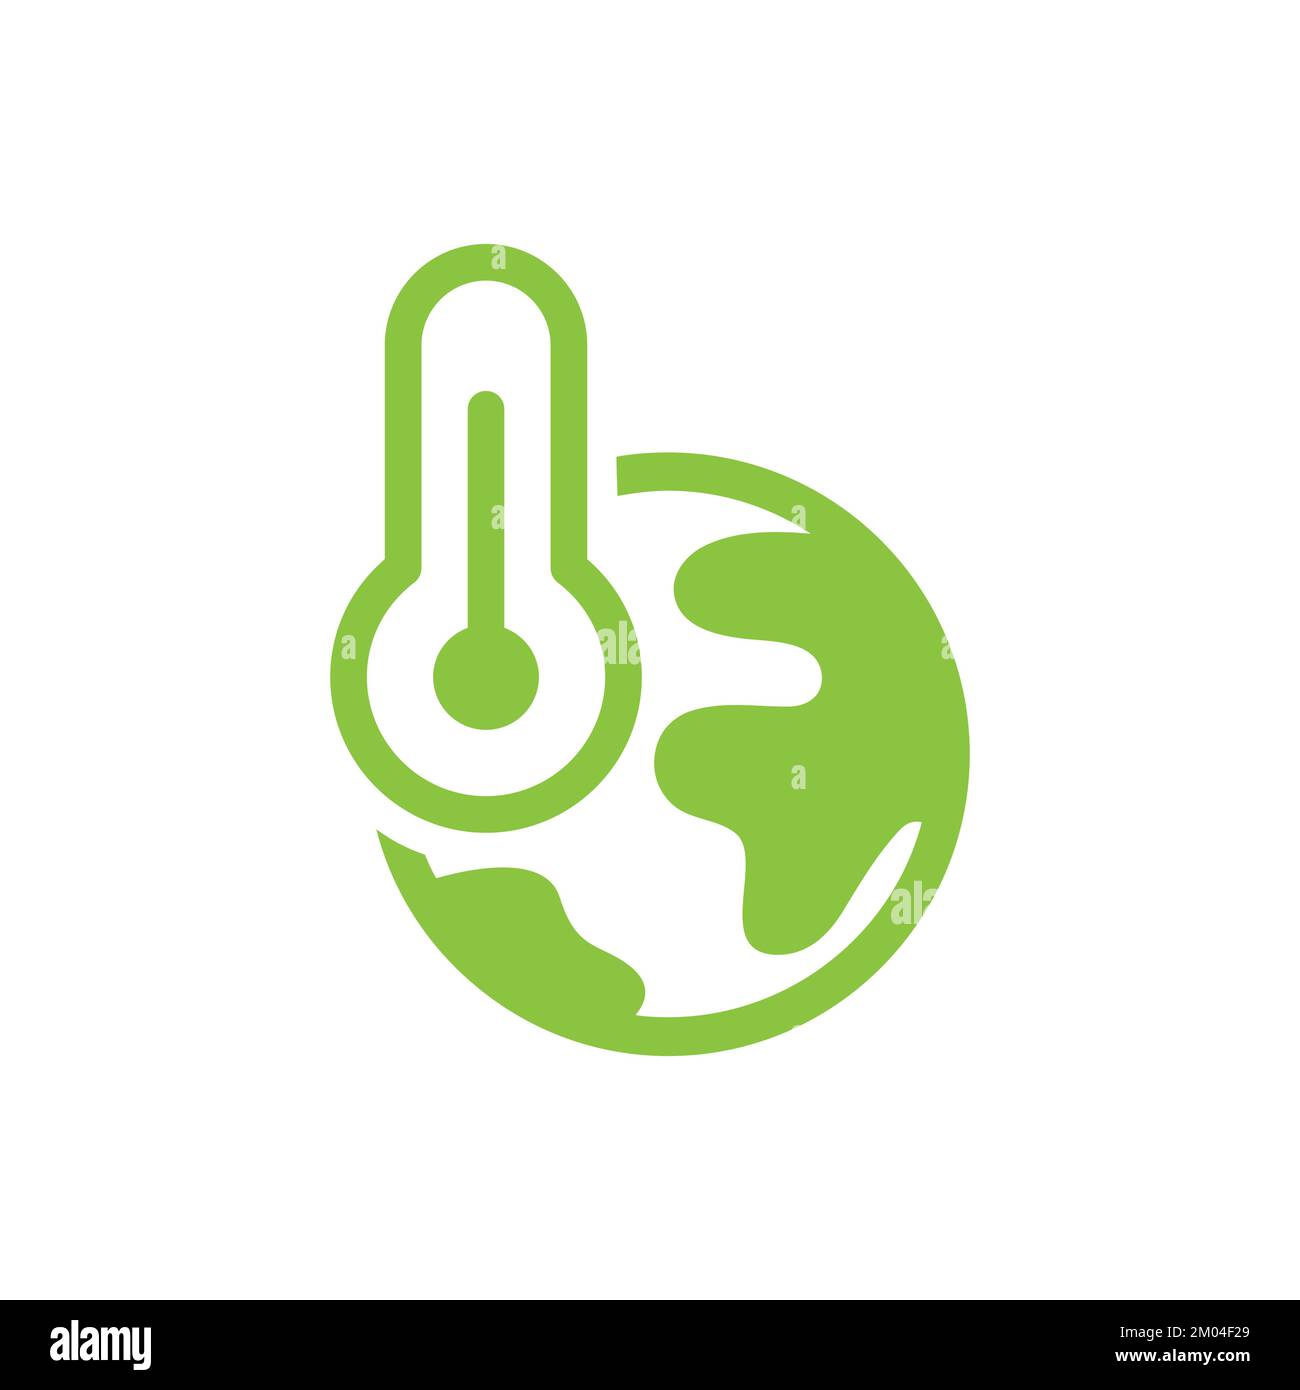 Icona vettoriale a forma di globo e di linea del termometro. Simbolo del riscaldamento globale, del cambiamento climatico e dell'ambiente. Illustrazione Vettoriale